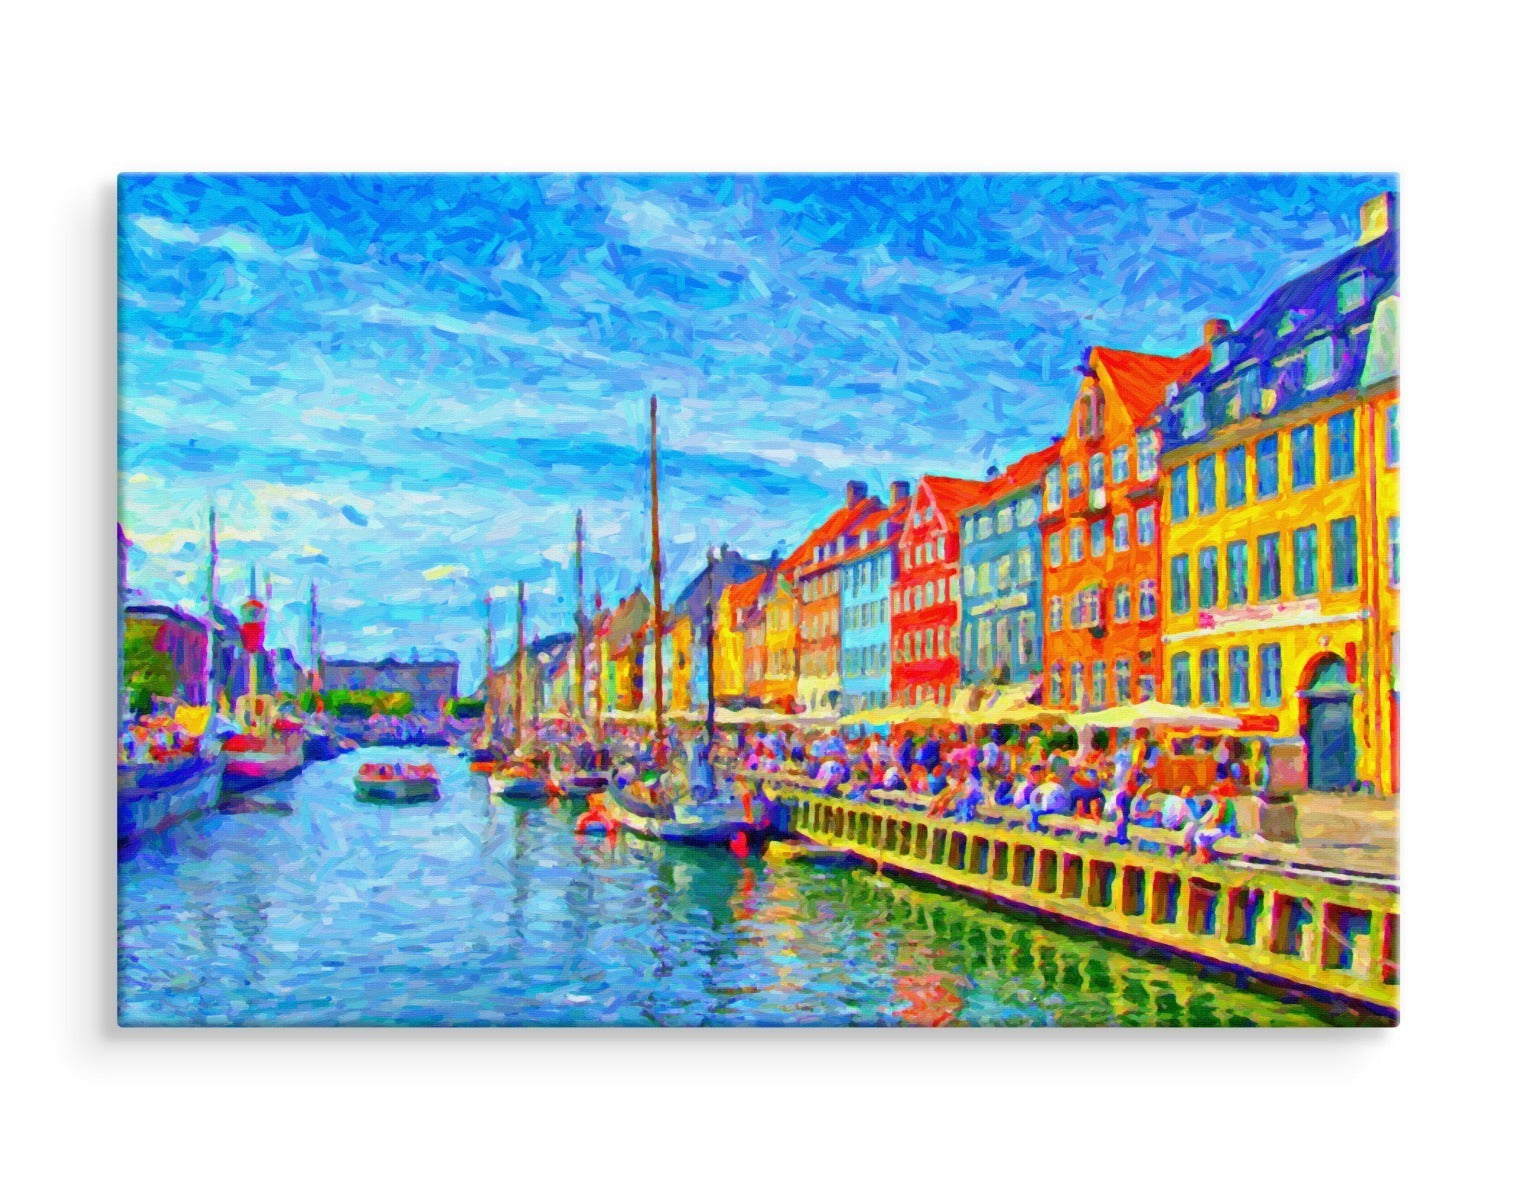 Nyhavn-kanalen i sentrum av københavn